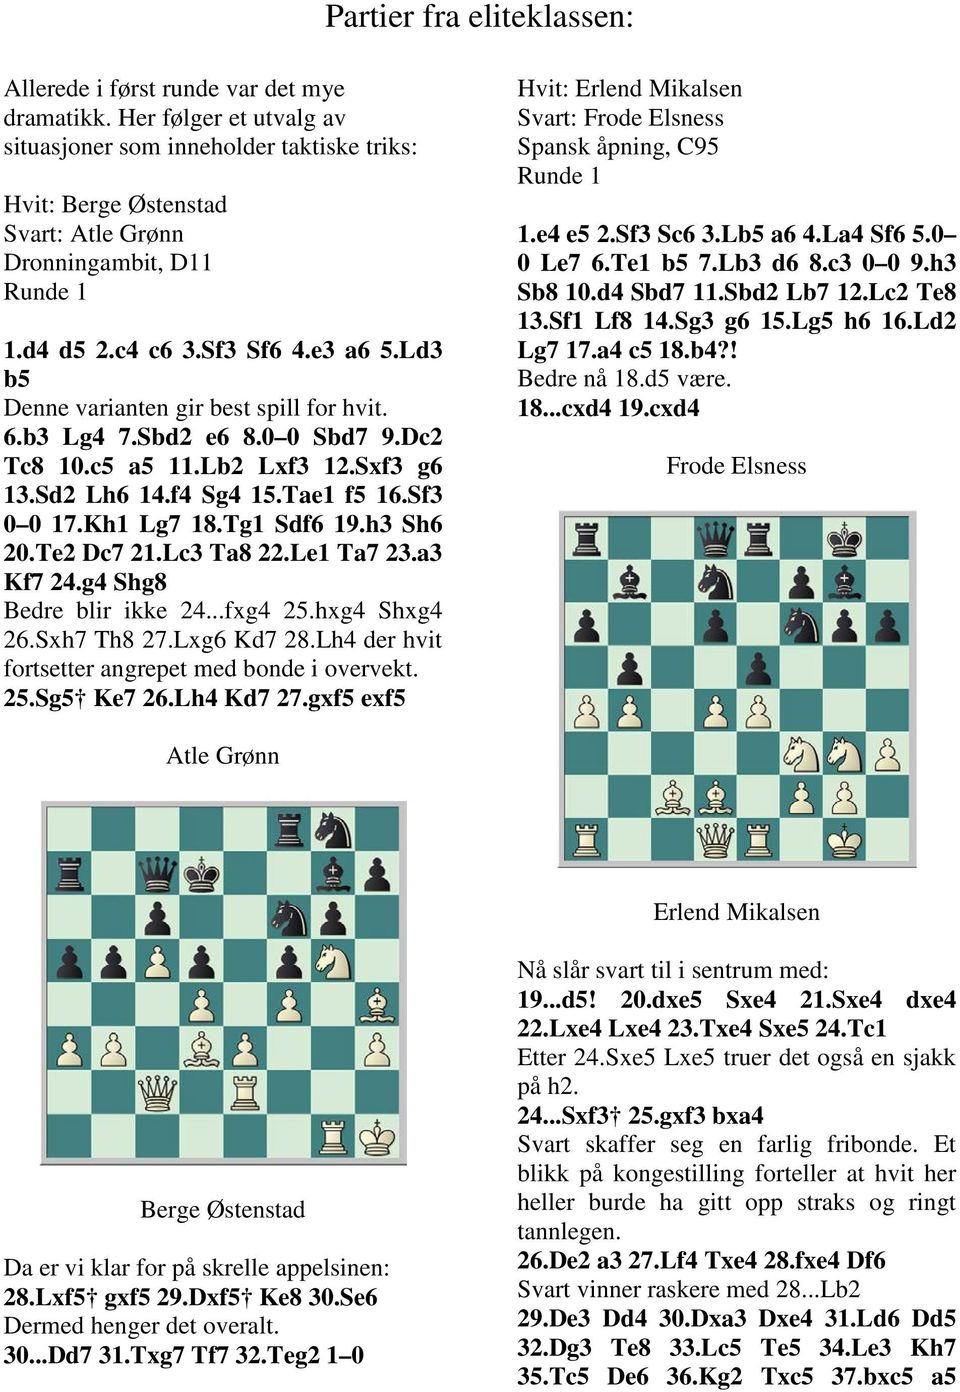 Kh1 Lg7 18.Tg1 Sdf6 19.h3 Sh6 20.Te2 Dc7 21.Lc3 Ta8 22.Le1 Ta7 23.a3 Kf7 24.g4 Shg8 Bedre blir ikke 24...fxg4 25.hxg4 Shxg4 26.Sxh7 Th8 27.Lxg6 Kd7 28.